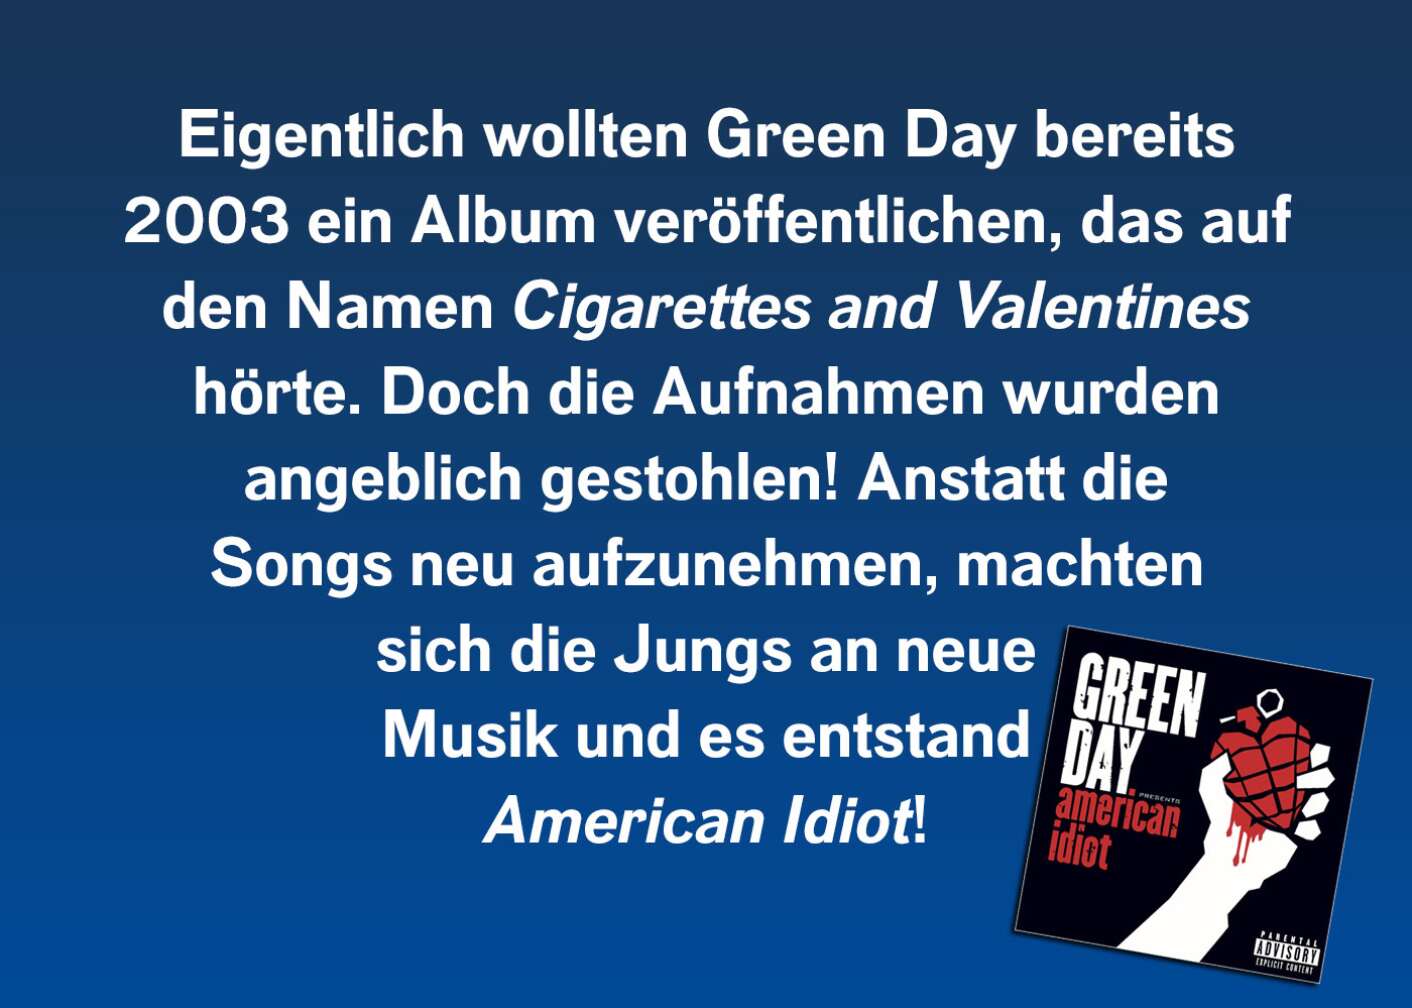 Eigentlich wollten Green Day bereits 2003 ein Album veröffentlichen, das auf den Namen Cigarettes and Valentines hörte. Doch die Aufnahmen wurden angeblich gestohlen! Anstatt die Songs neu aufzunehmen, machten sich die Jungs an neue Musik und es entstand American Idiot!